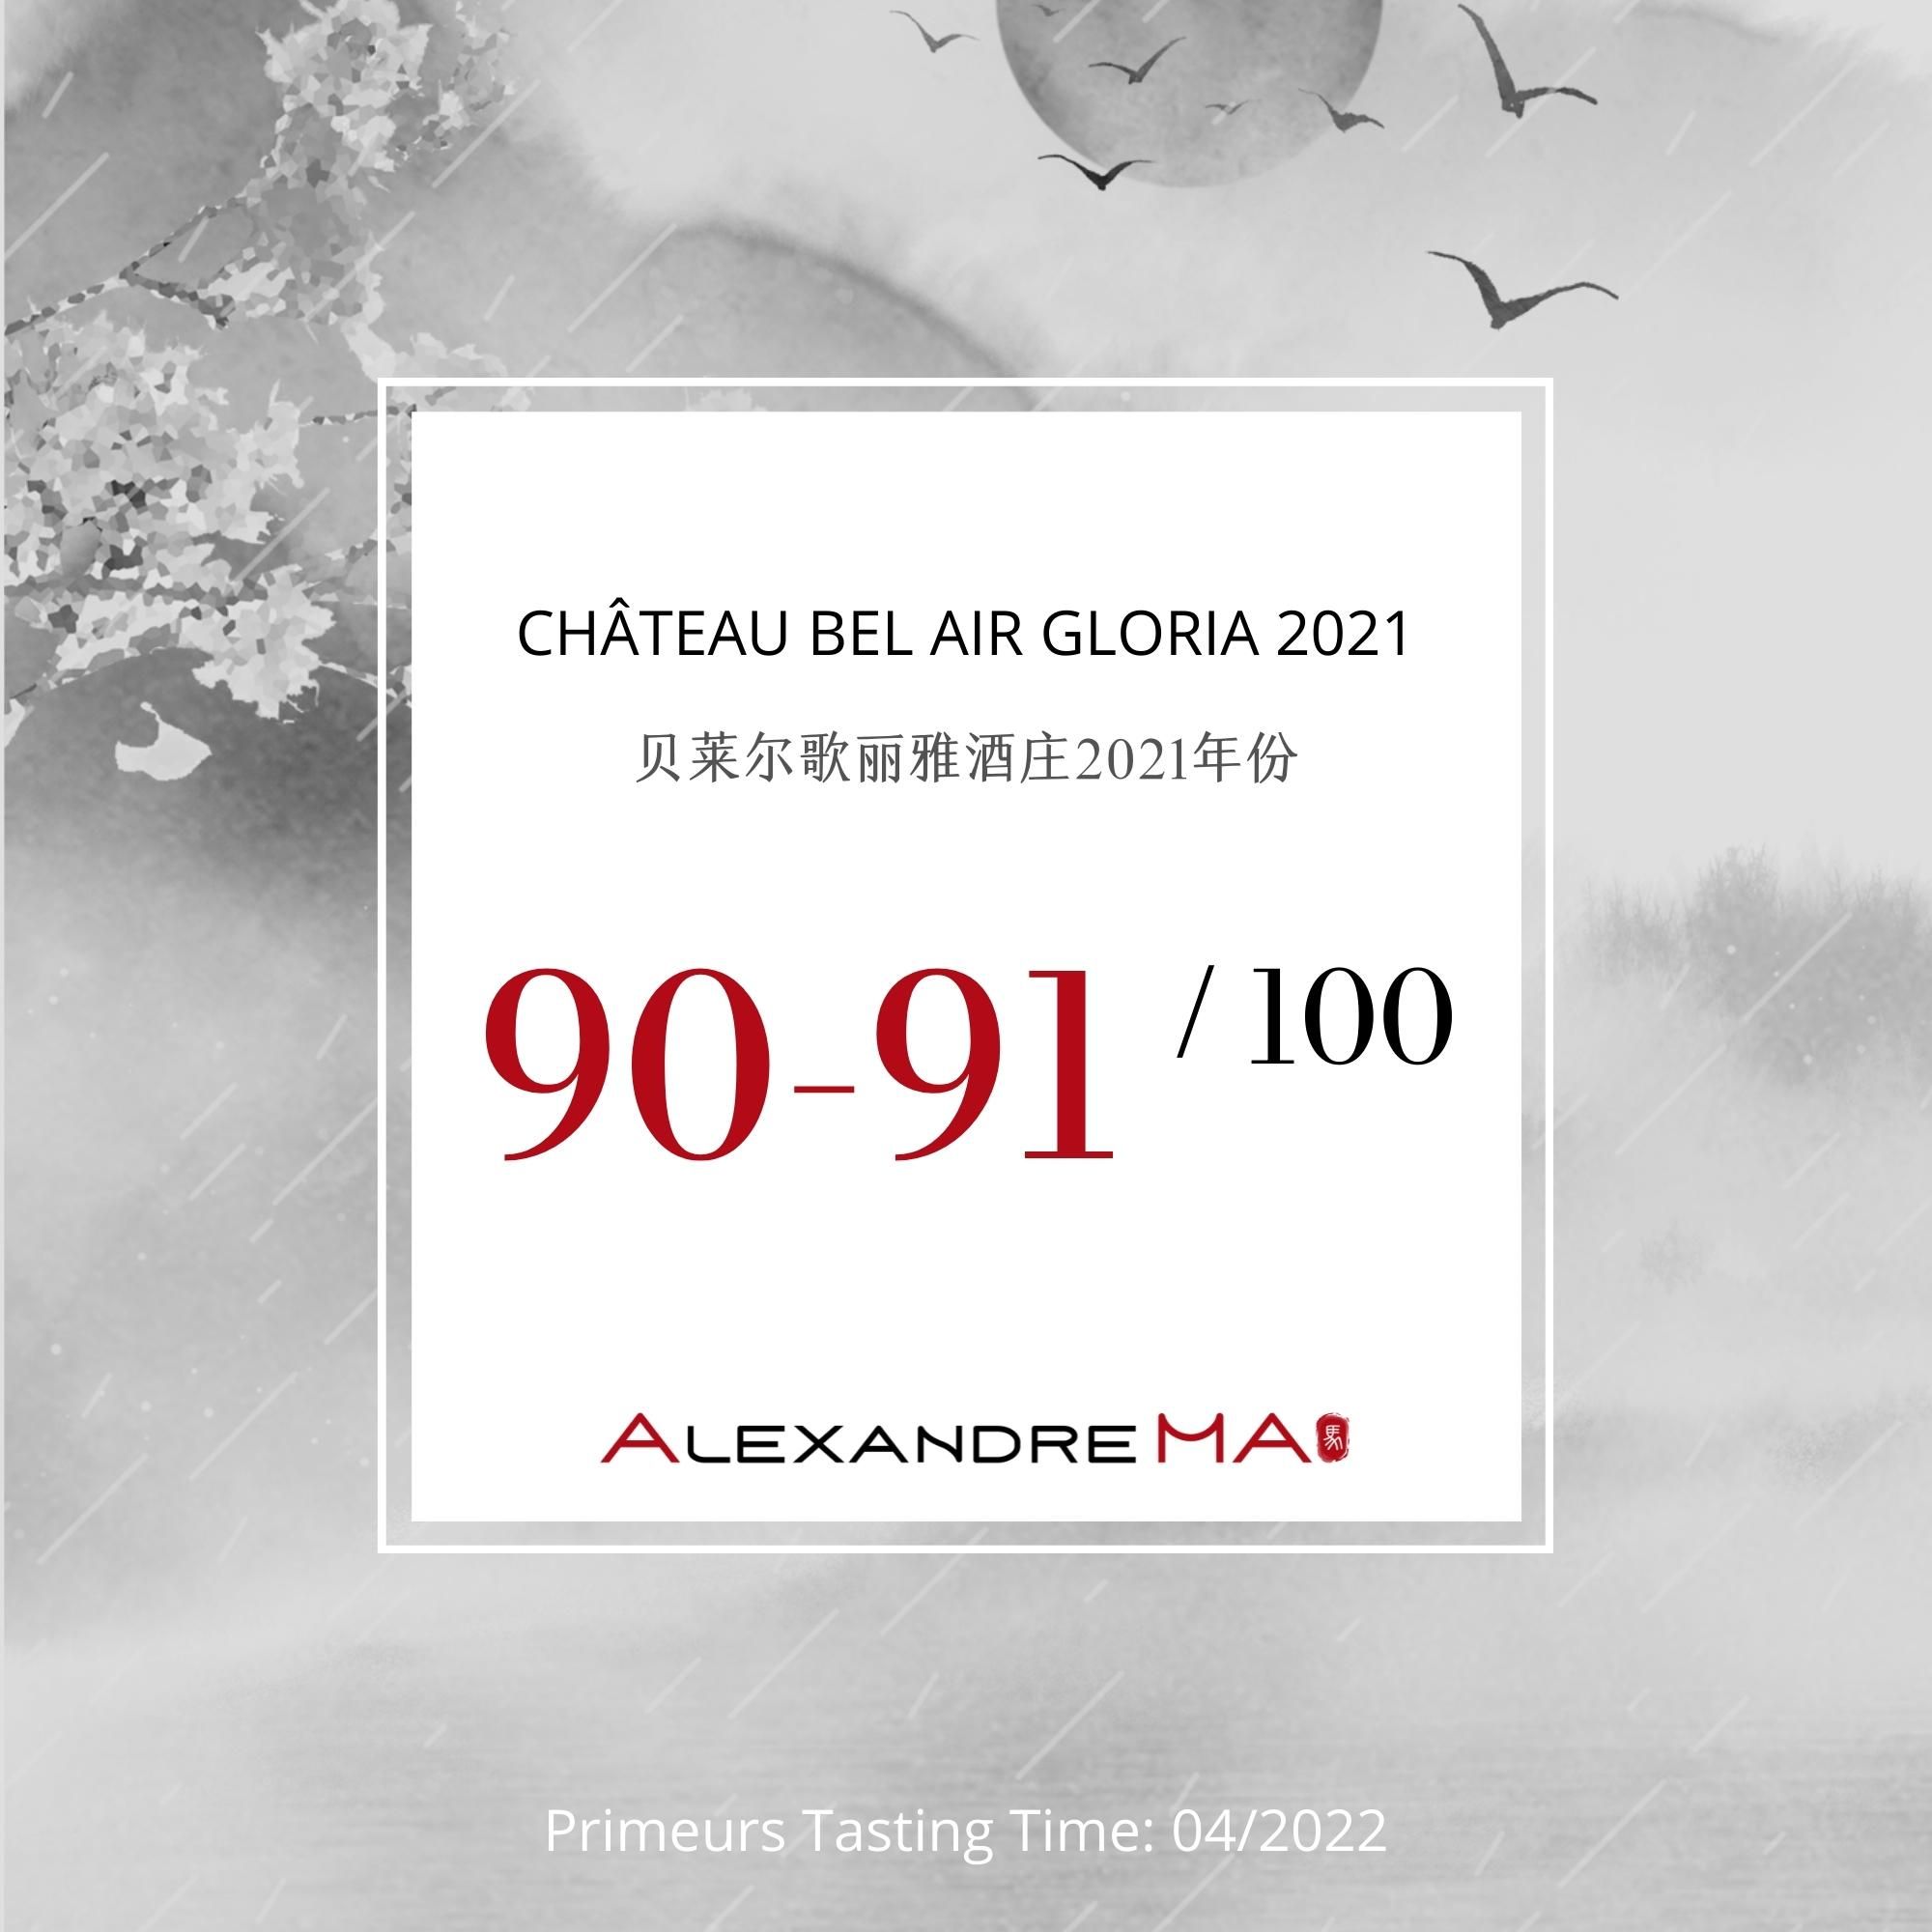 Château Bel Air Gloria 2021 - Alexandre MA